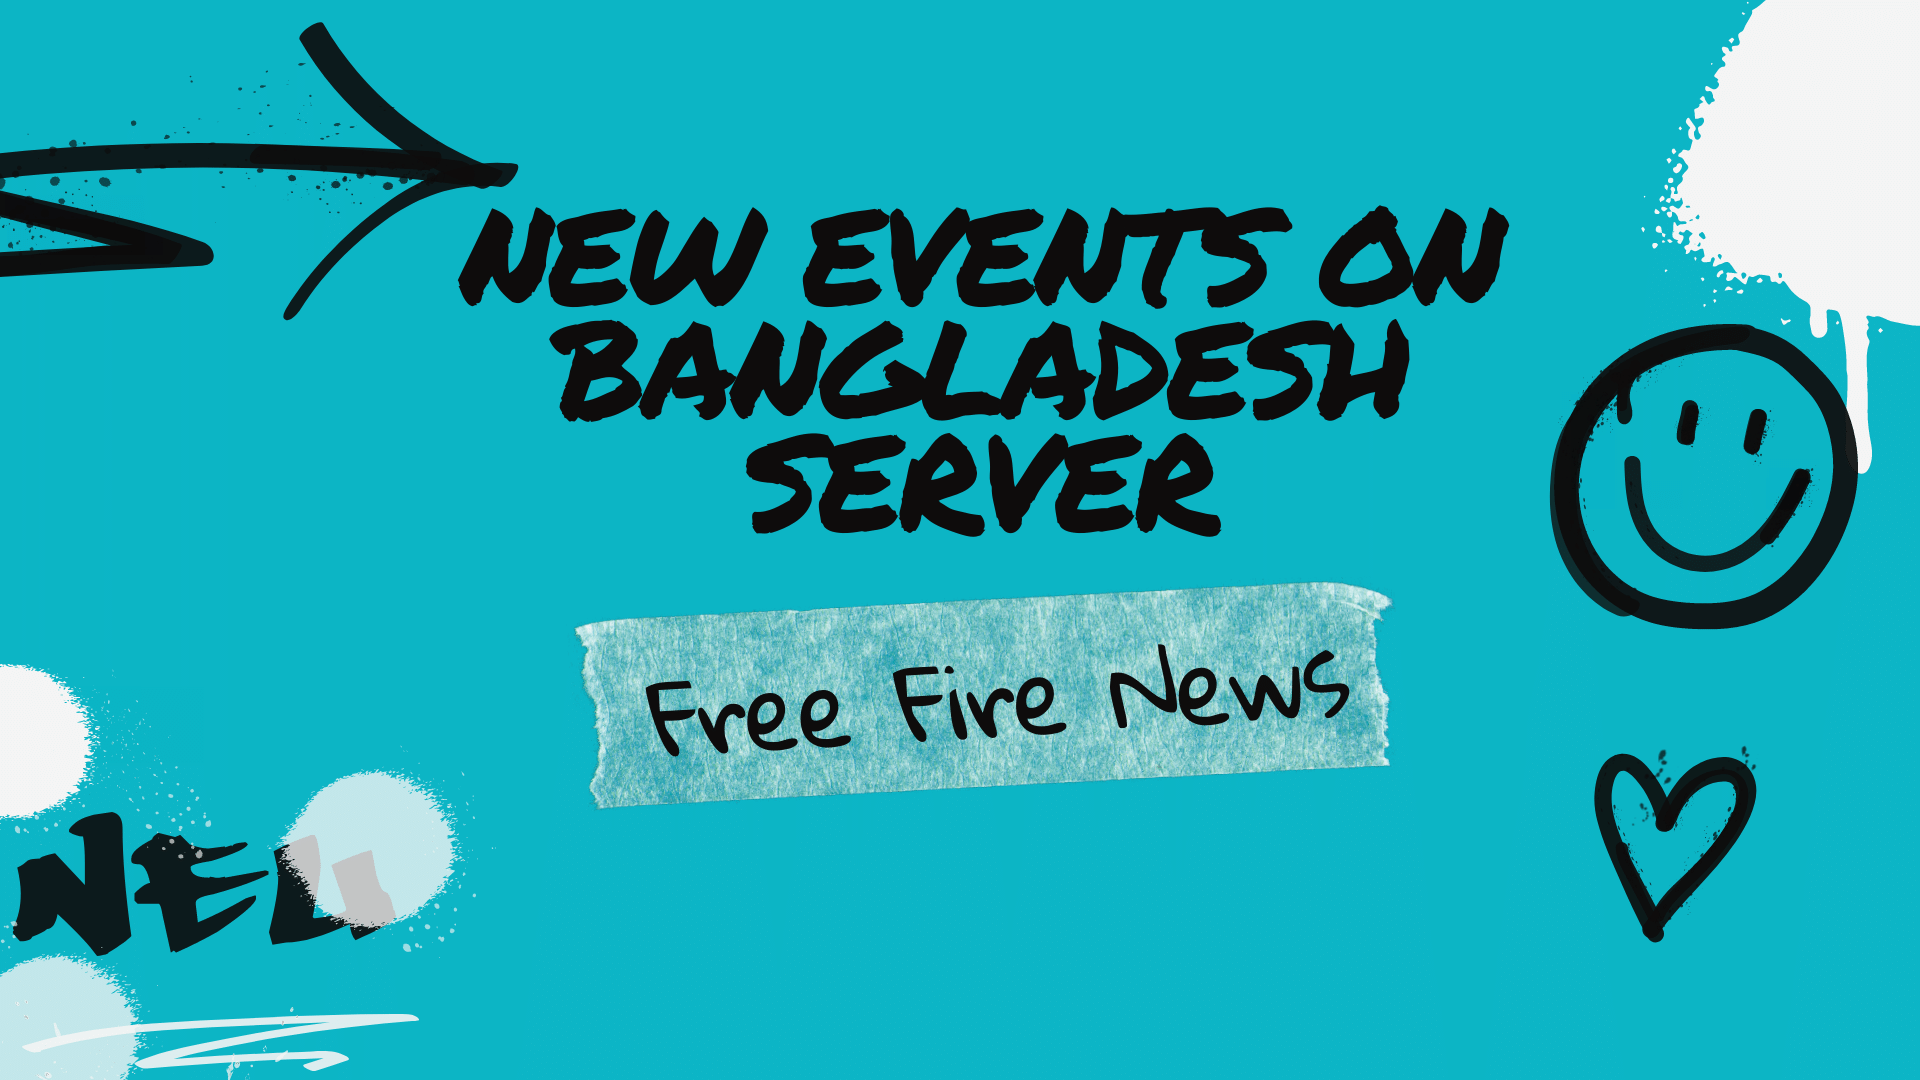 Bangladesh server